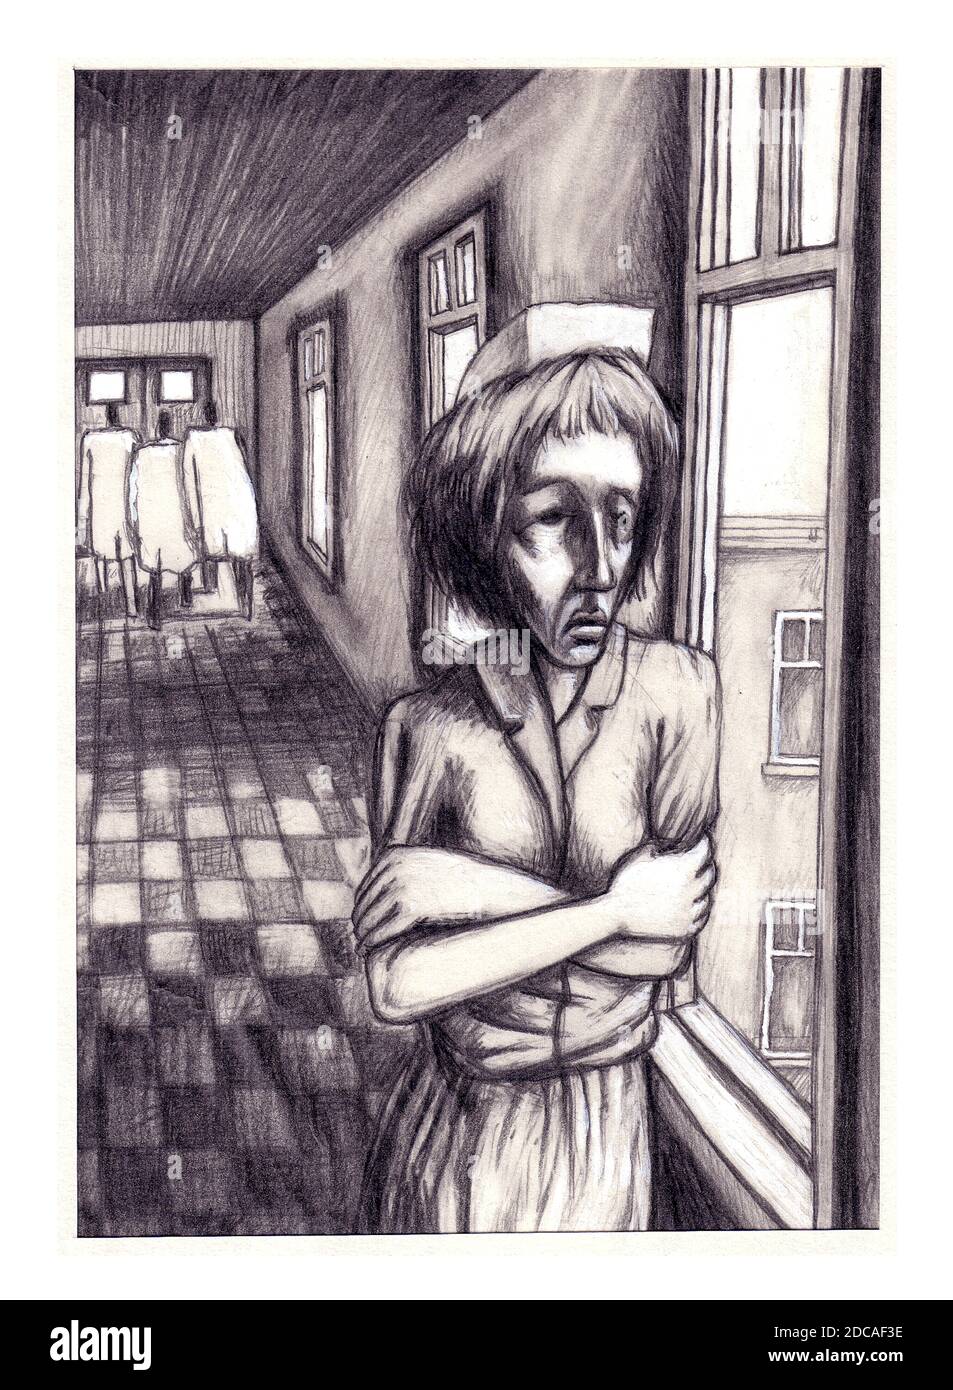 Stress infermieristico, isolamento, salute mentale PTSD lavoro preoccupazioni Coronavirus, ambiente Covid-19 originale arte illustrazione in bianco e nero grafite Foto Stock